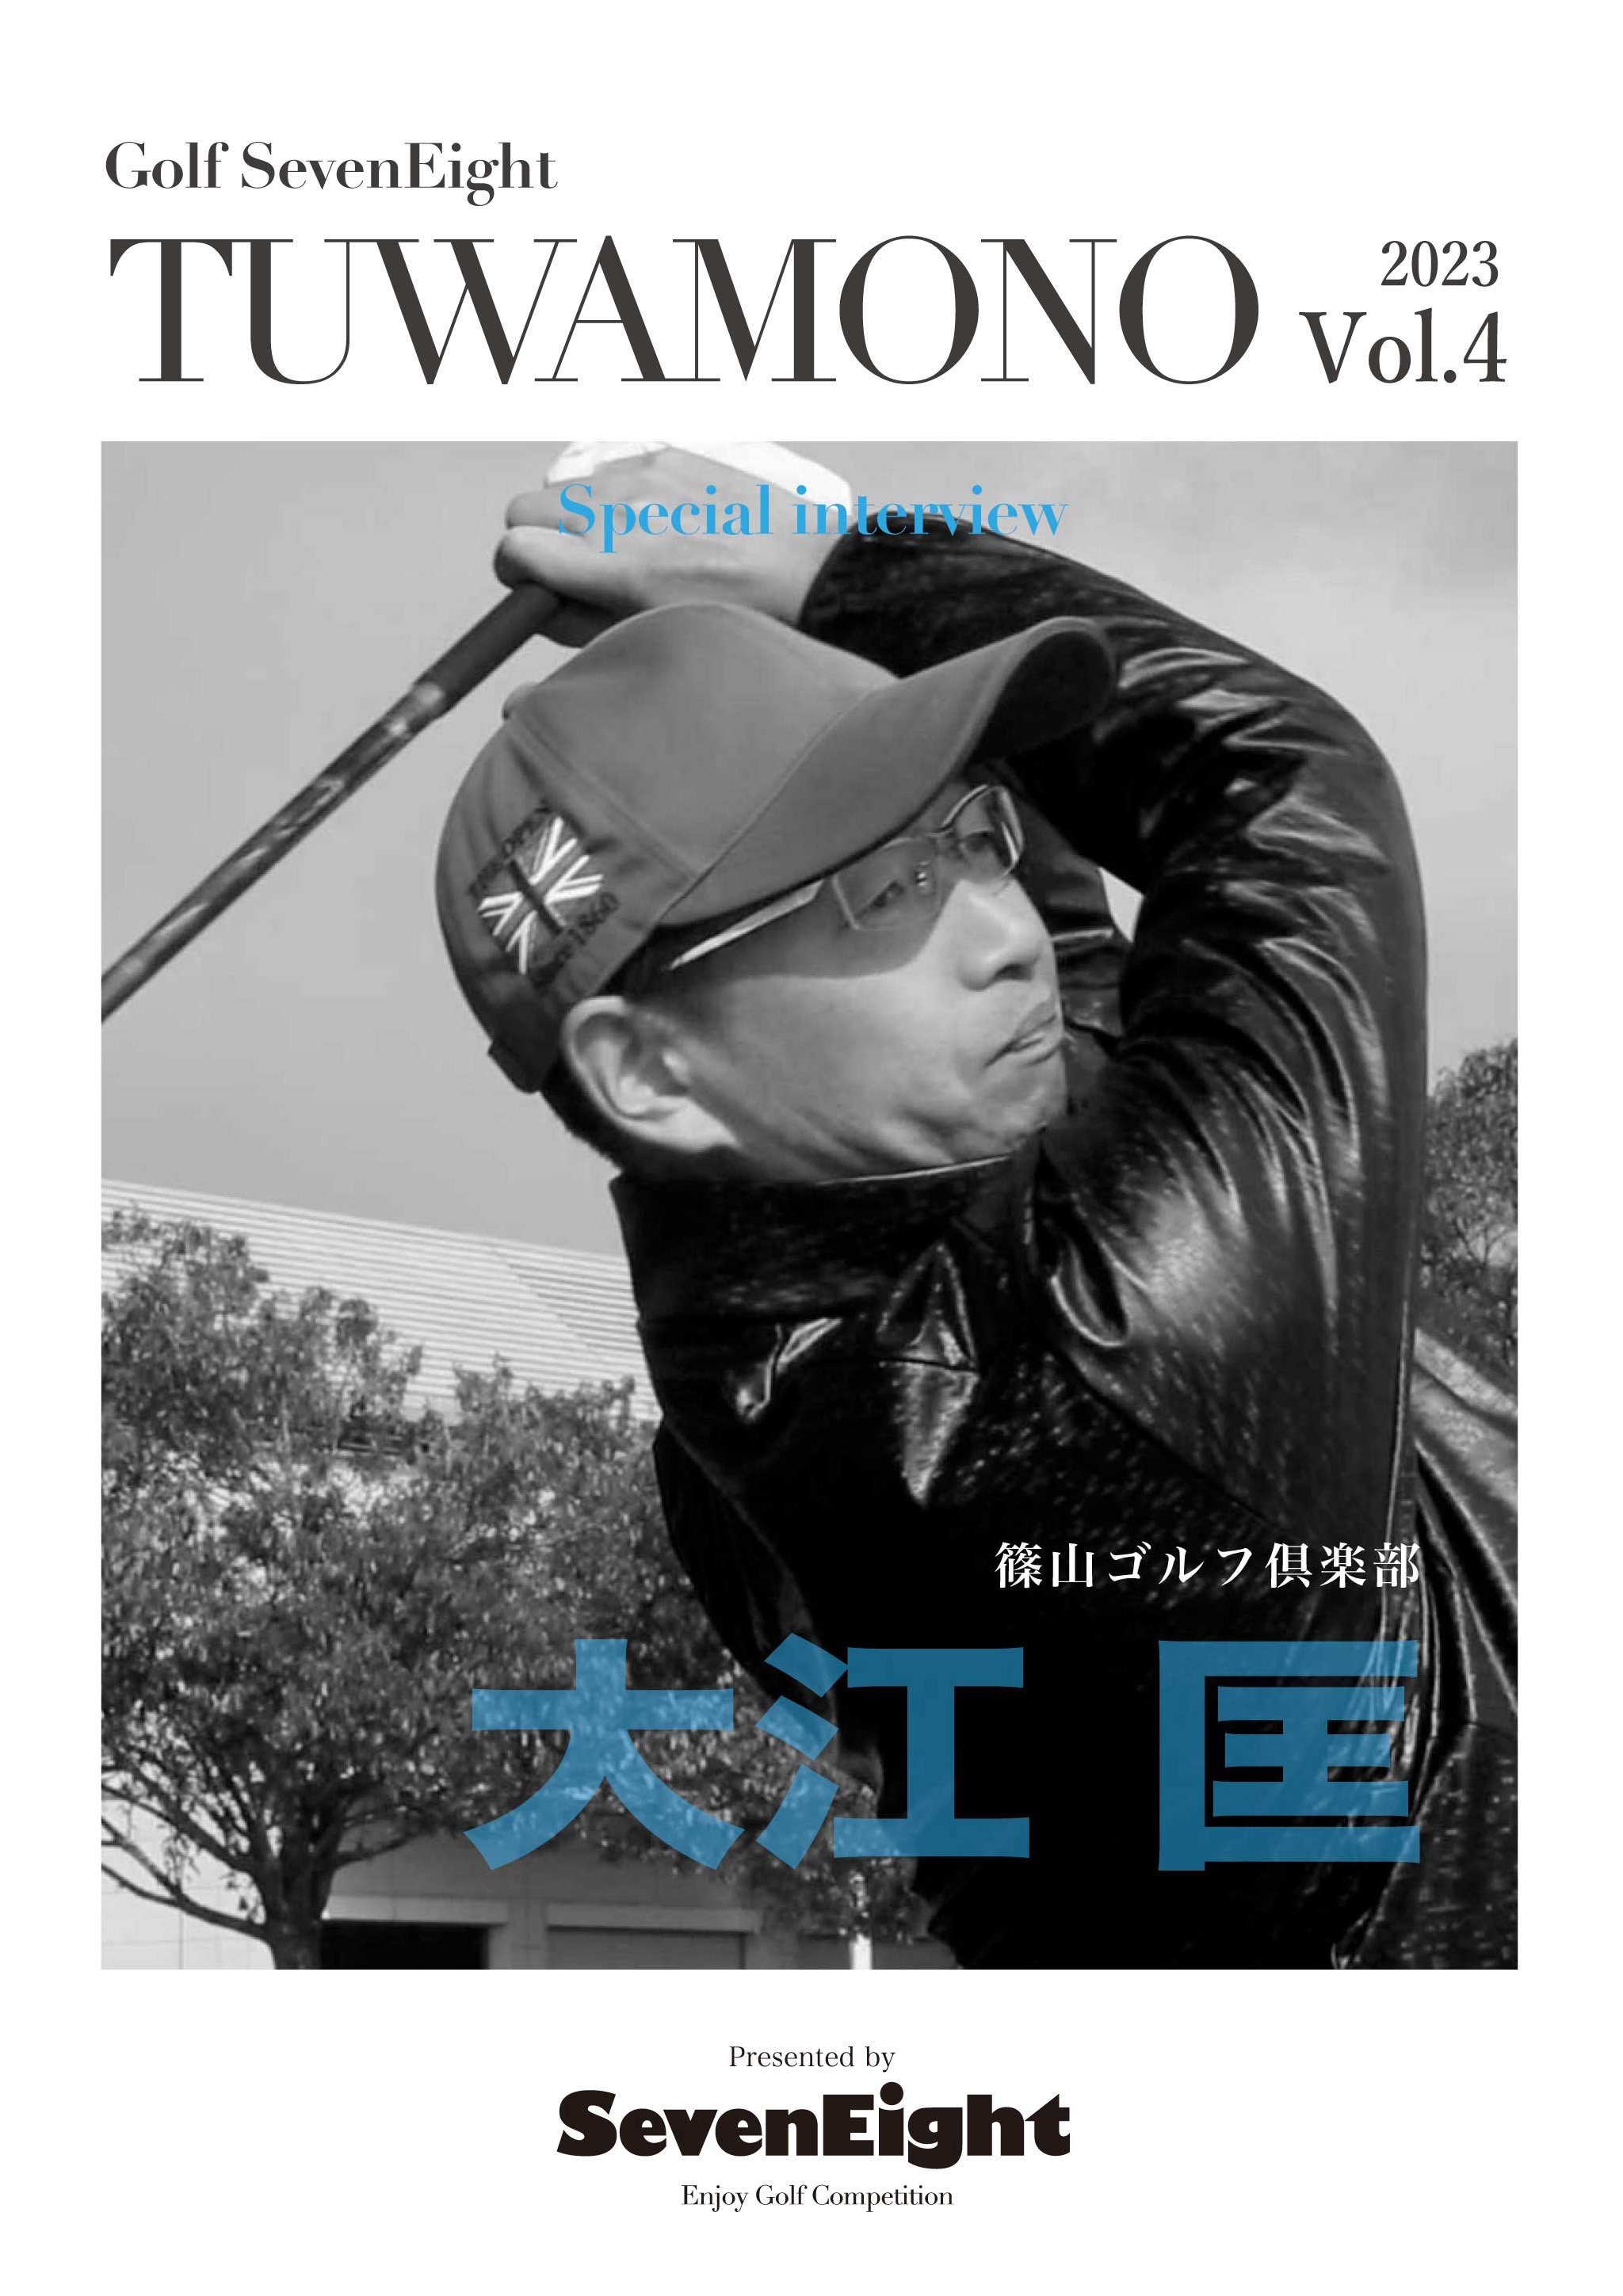 ゴルフサークルセブンエイトの大江 匡ポスター6